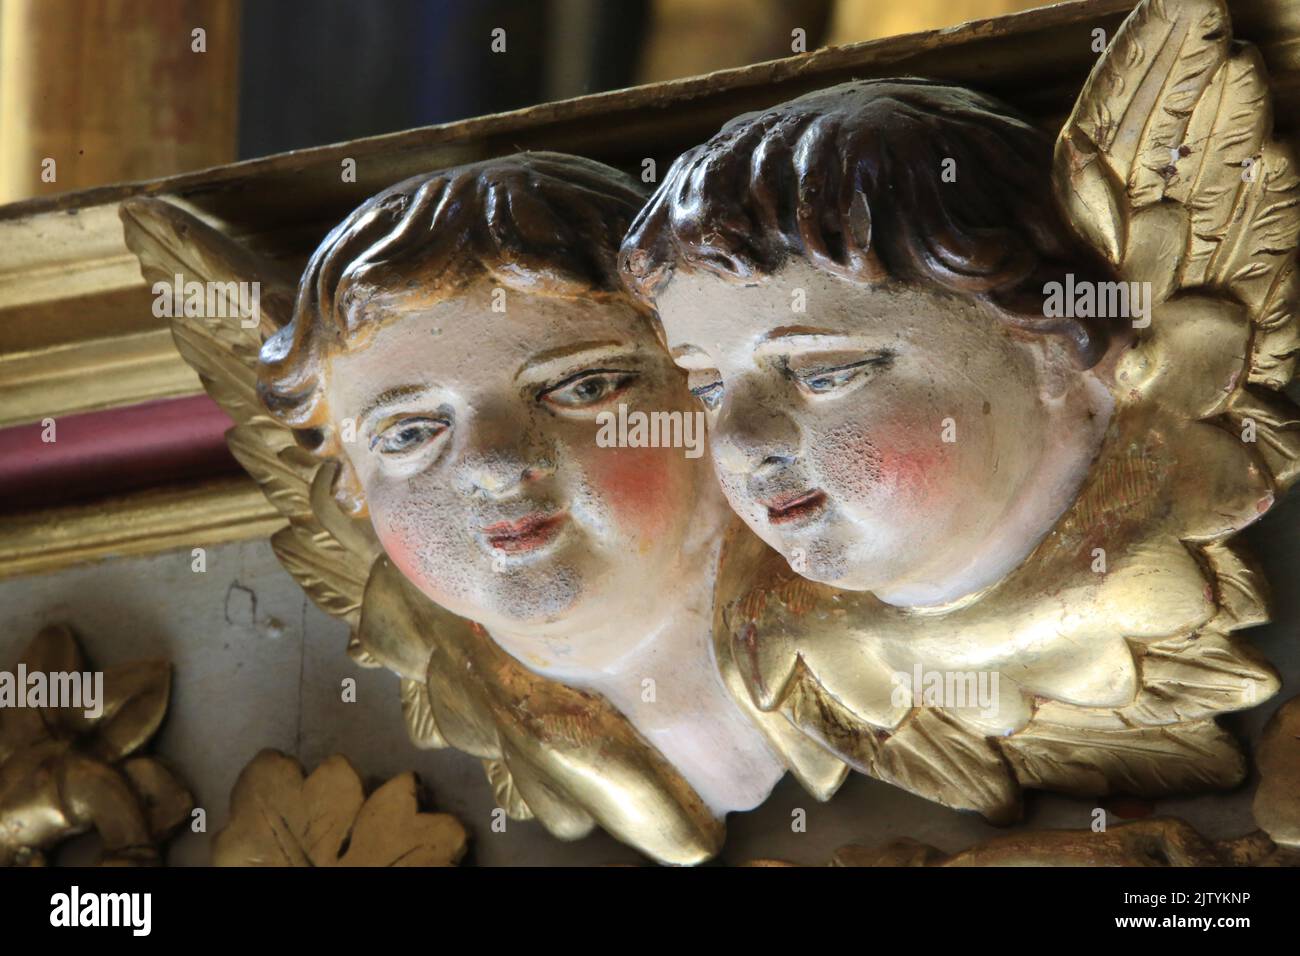 Visage de deux anges baroques. Sculpture. Eglise Saint-Gervais-et-Protais. Saint-Gervais-les-Bains. Haute-Savoie. Auvergne-RhÃ´ne-Alpes. France. Europ Stock Photo